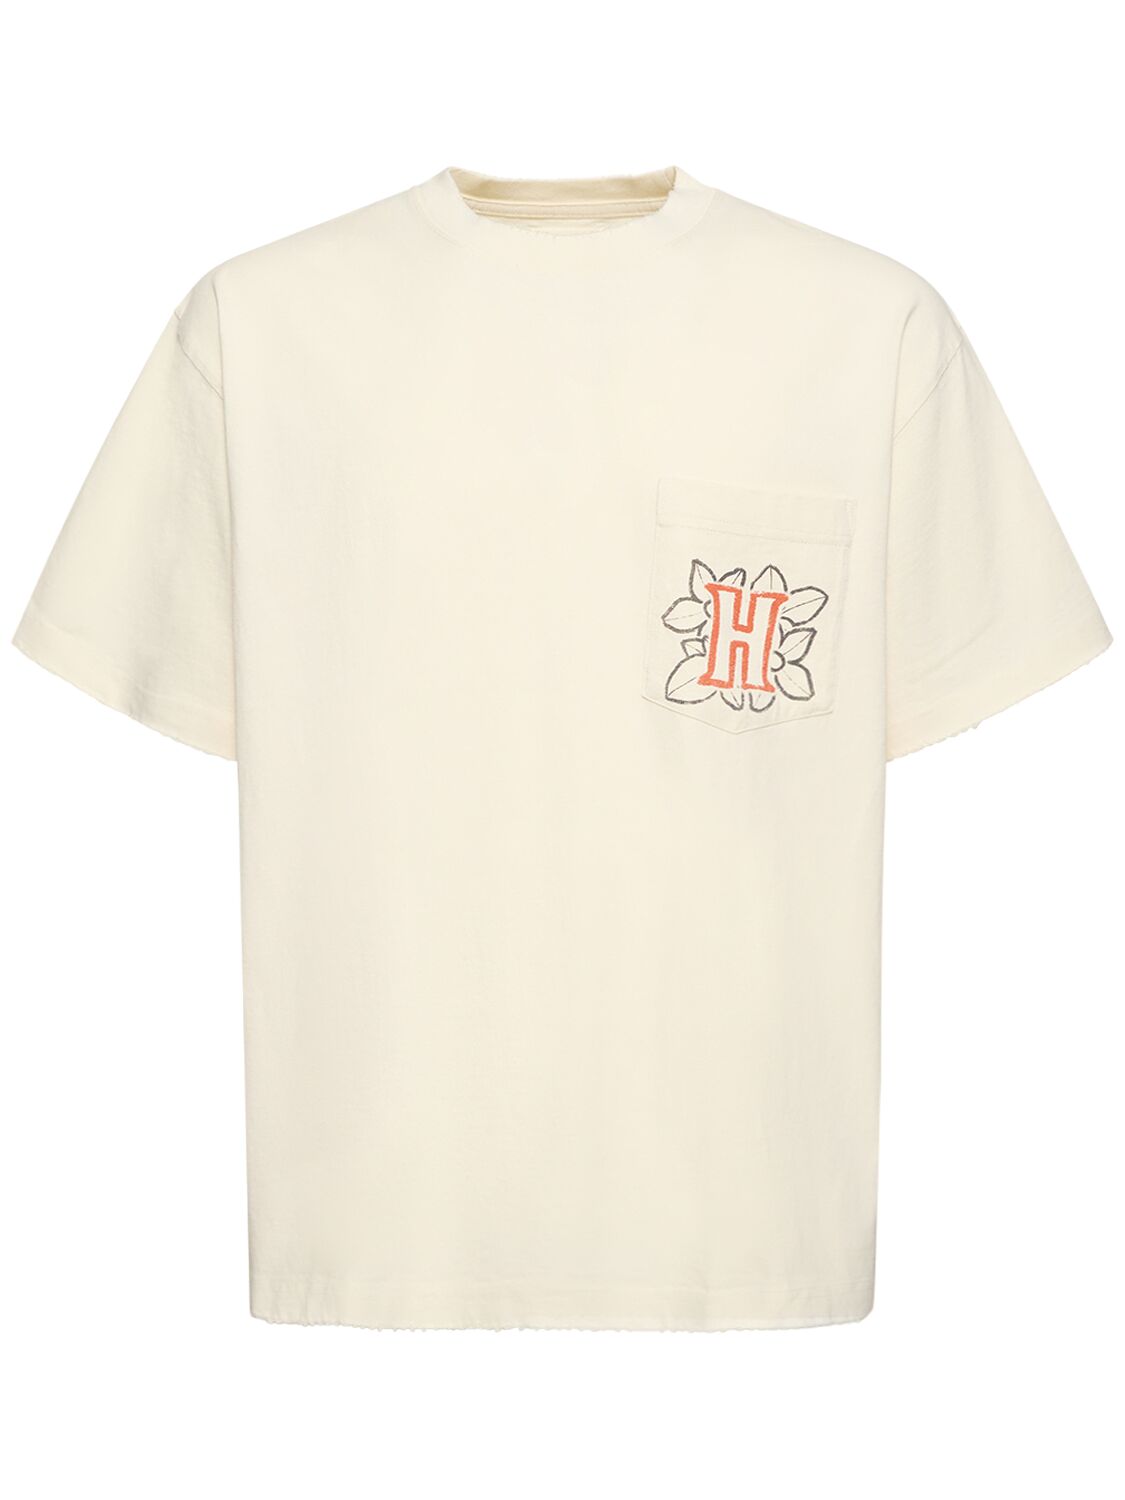 T-shirt En Jersey Avec Poche Fleurie B-summer - HONOR THE GIFT - Modalova